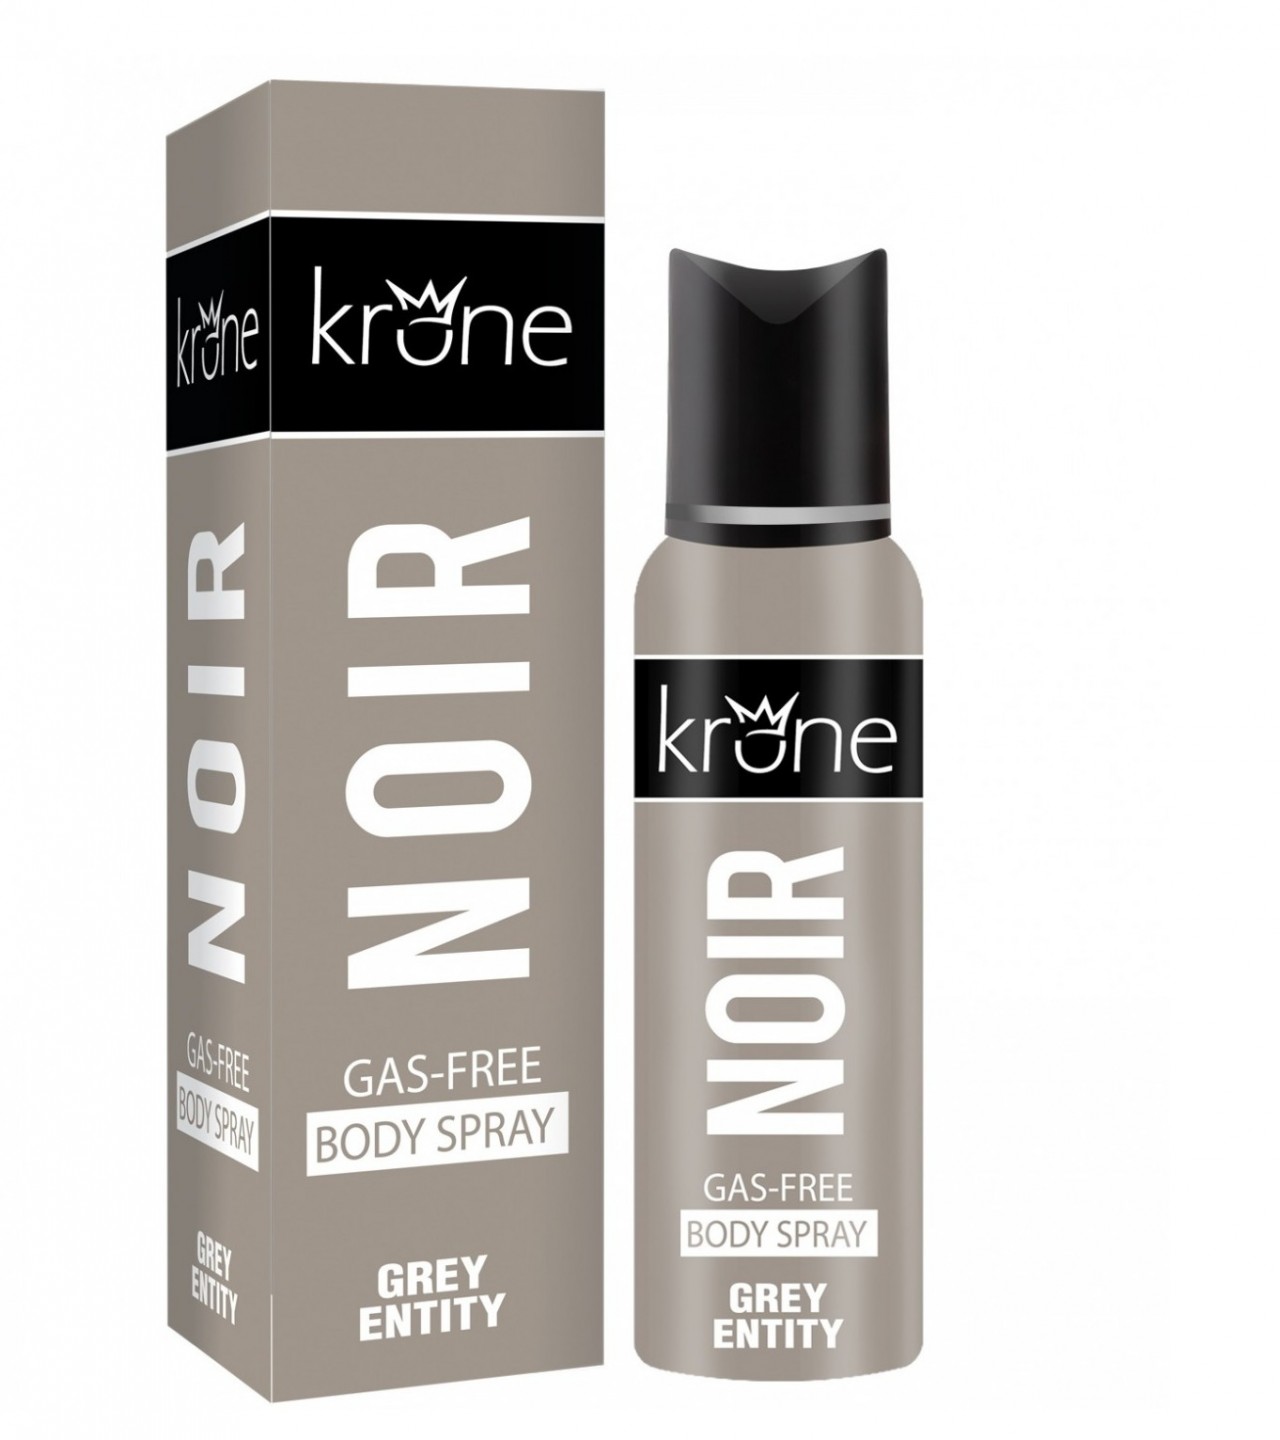 Krone Noir Grey Entity Perfume Body Spray - 120 ml